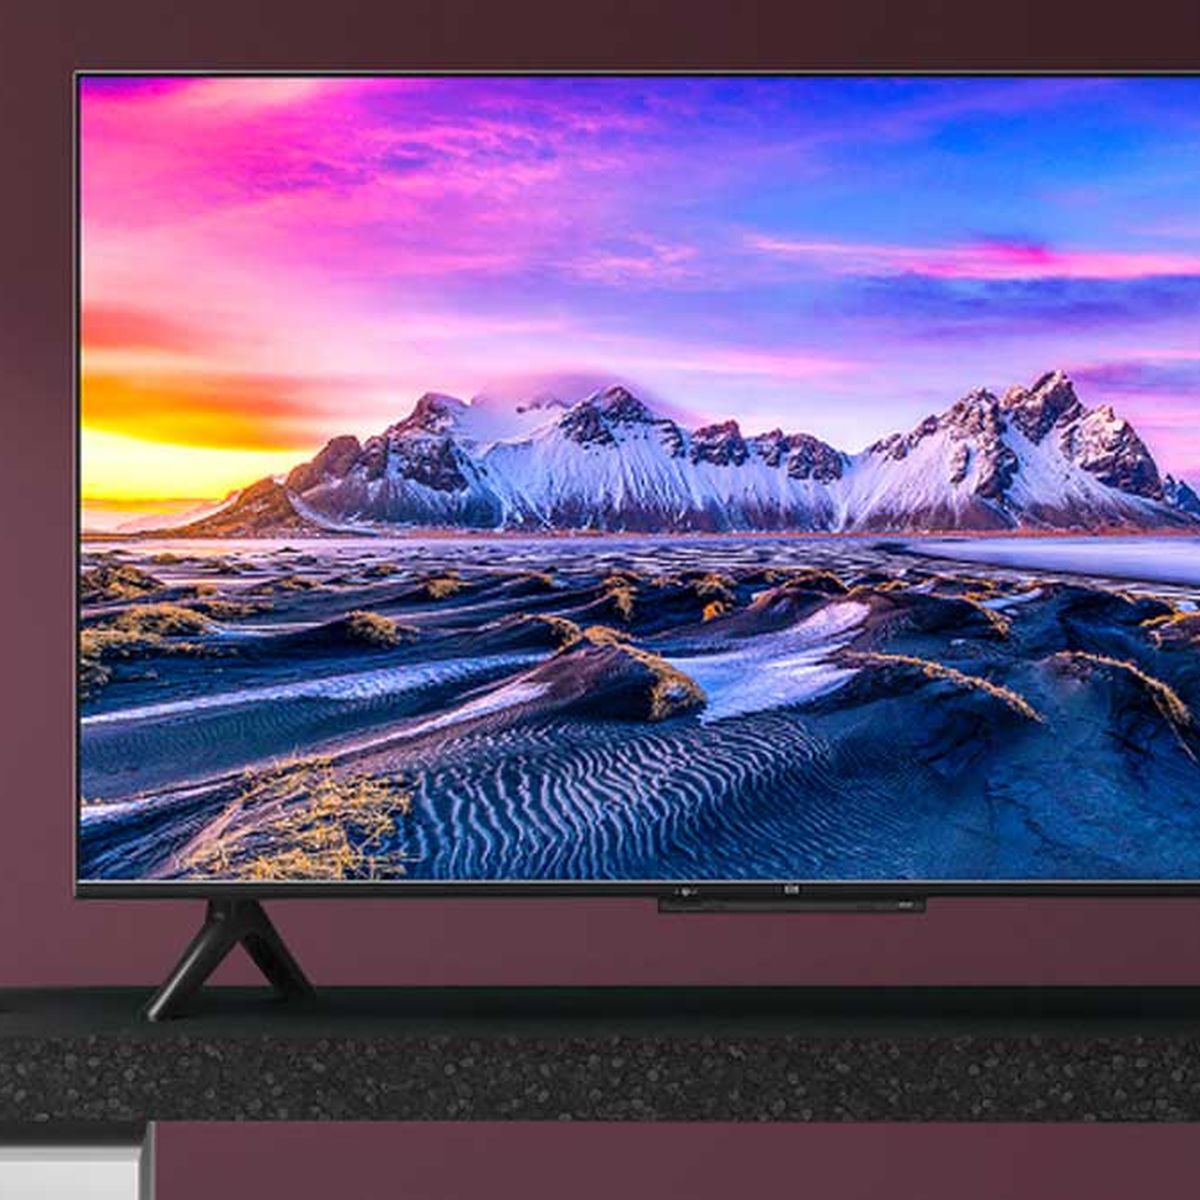 MediaMarkt tiene ahora esta Smart TV Xiaomi de 65 pulgadas ¡por